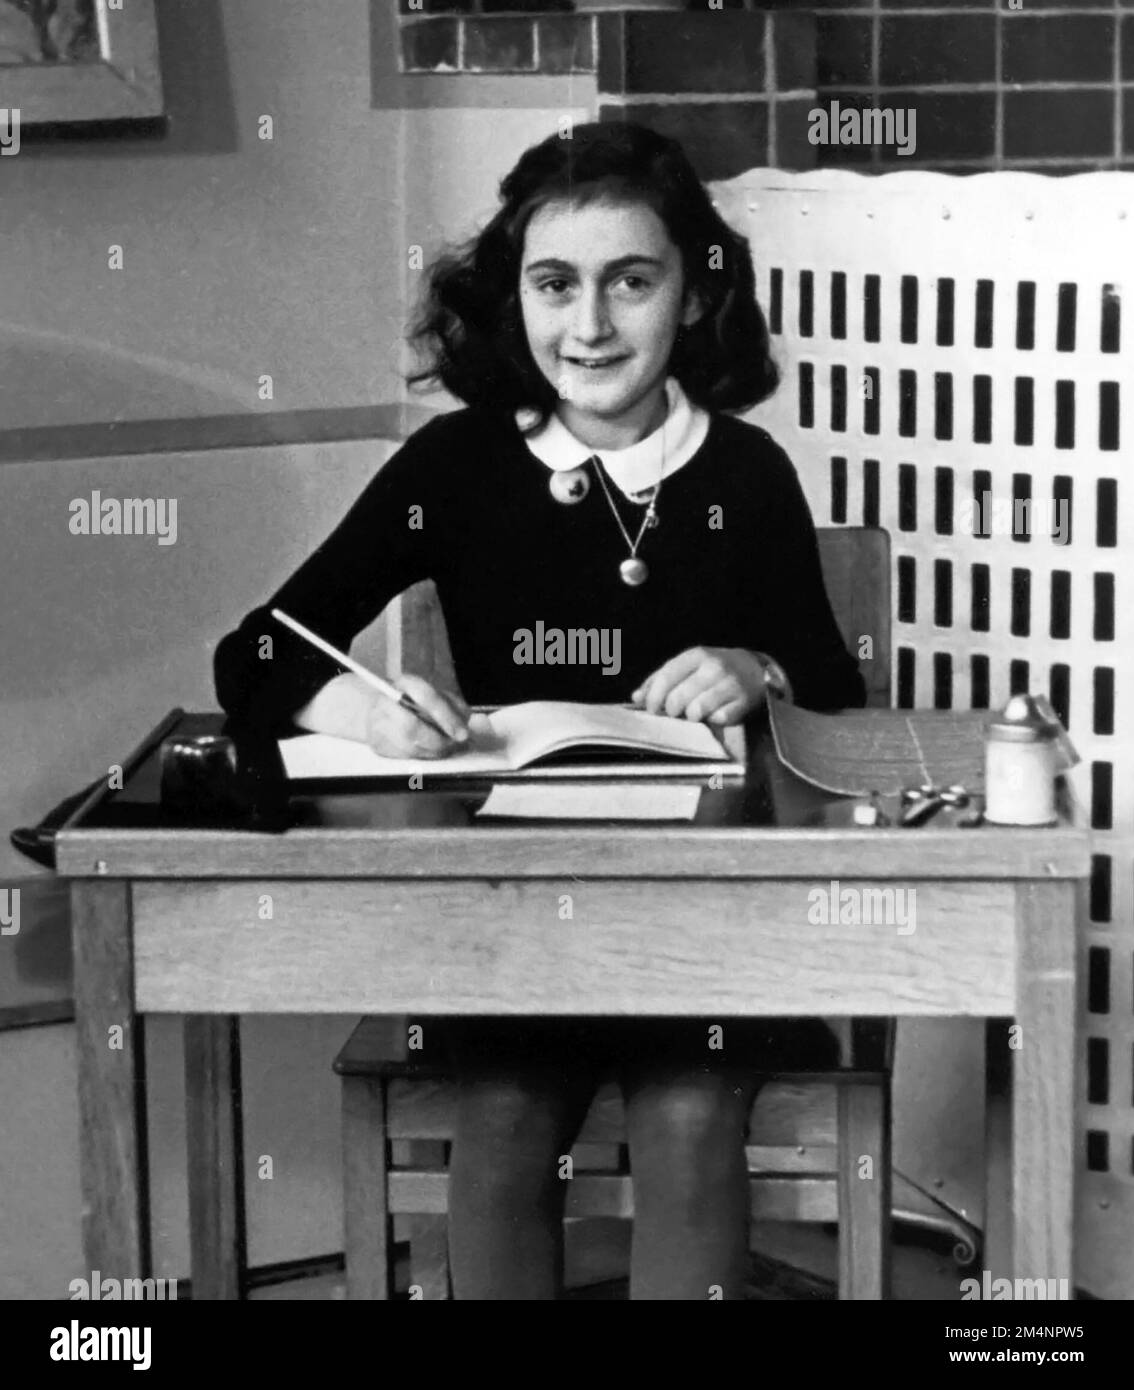 Anna Frank. Foto della scuola di Annelies Marie 'Anne' Frank (1929-1945), la giovane ragazza ebrea che diario di vita sotto l'occupazione nazista la rese famosa, 1940 Foto Stock